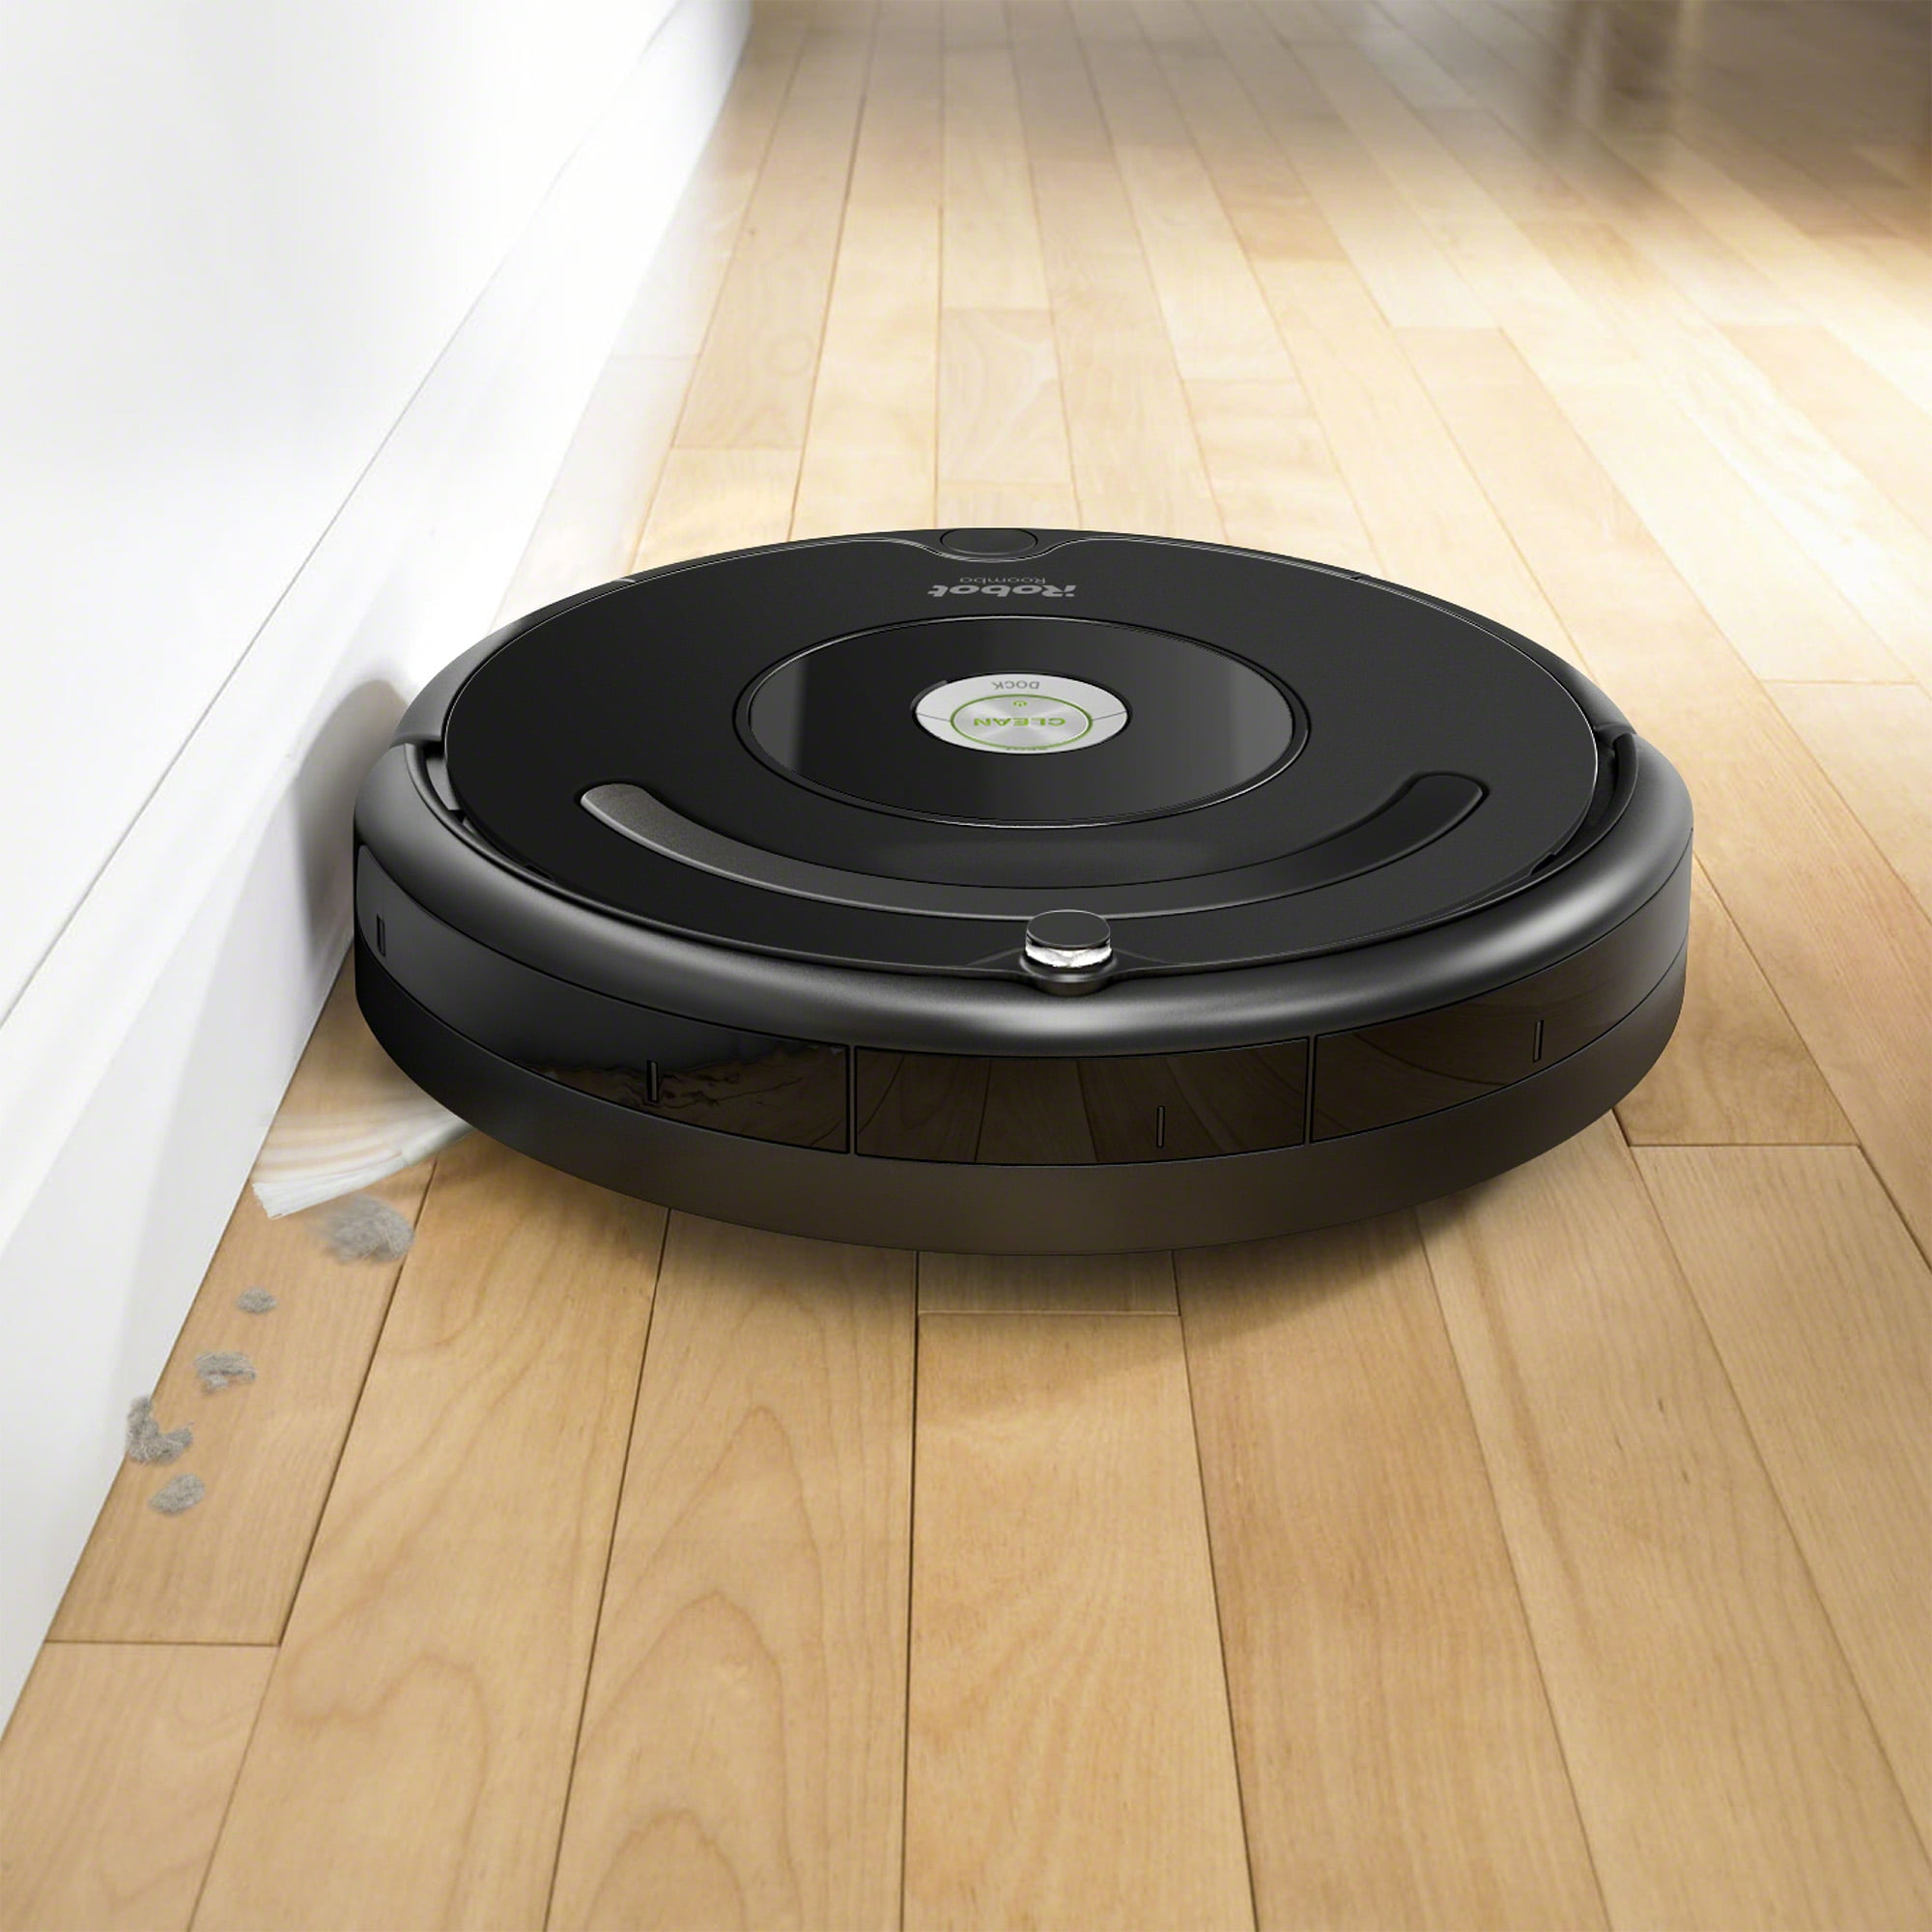 Magasinez les accessoires pour robots aspirateurs Roomba®, iRobot